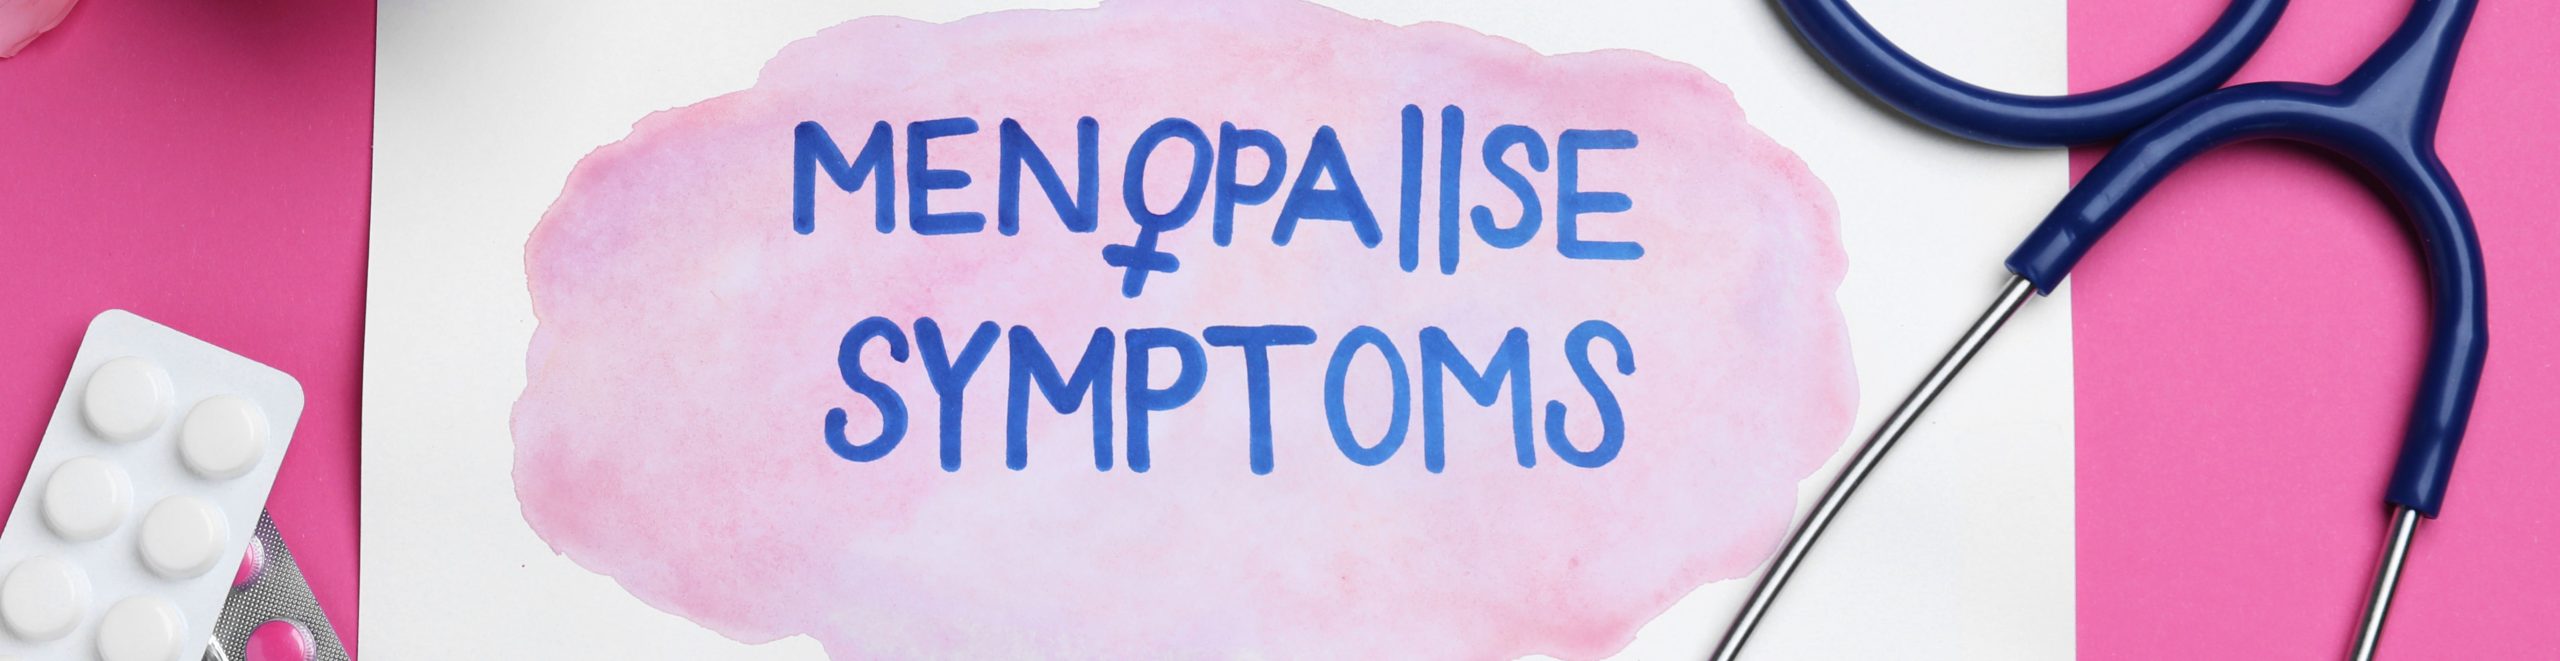 Menopause Symptoms written on a cardboard